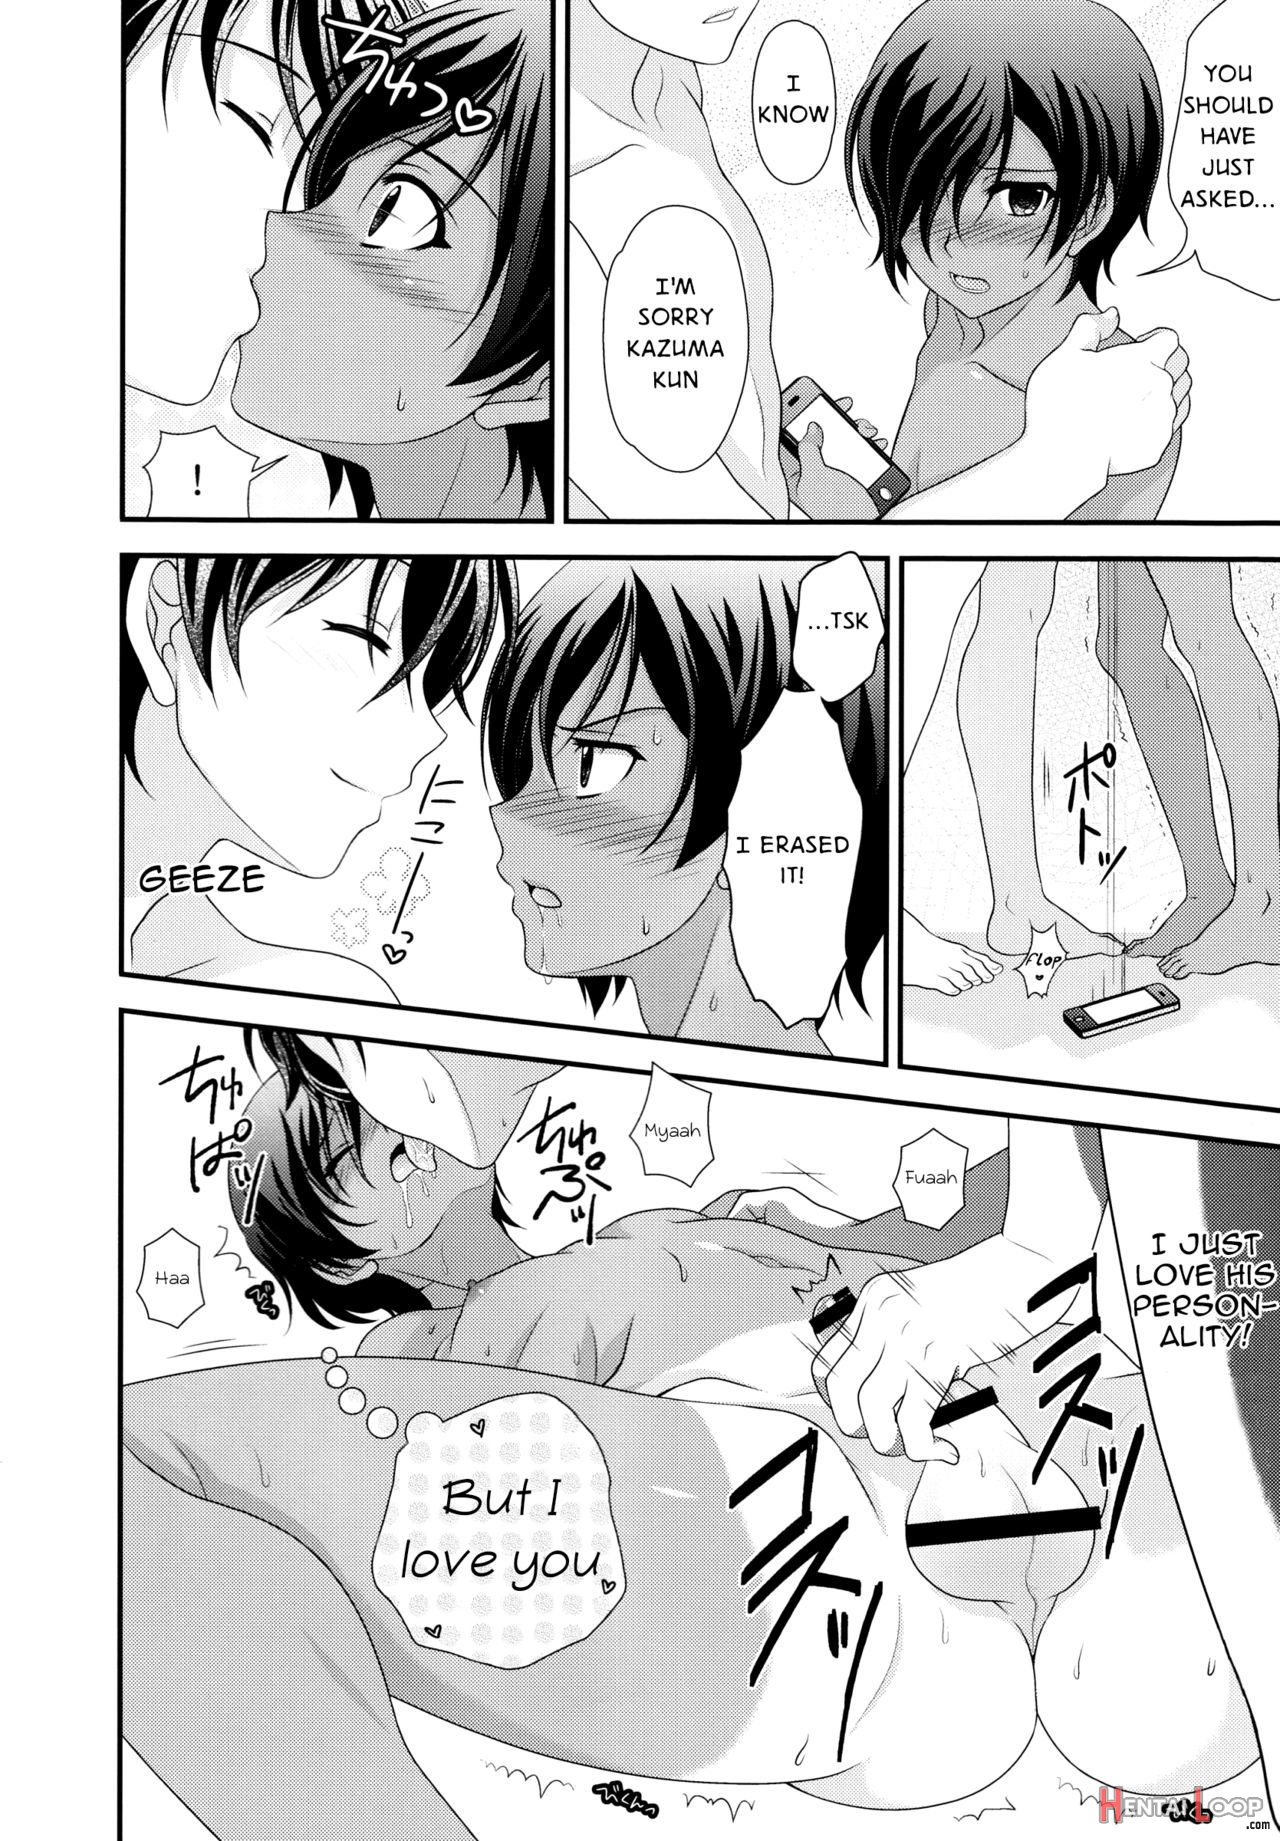 Koi Kazu! page 4